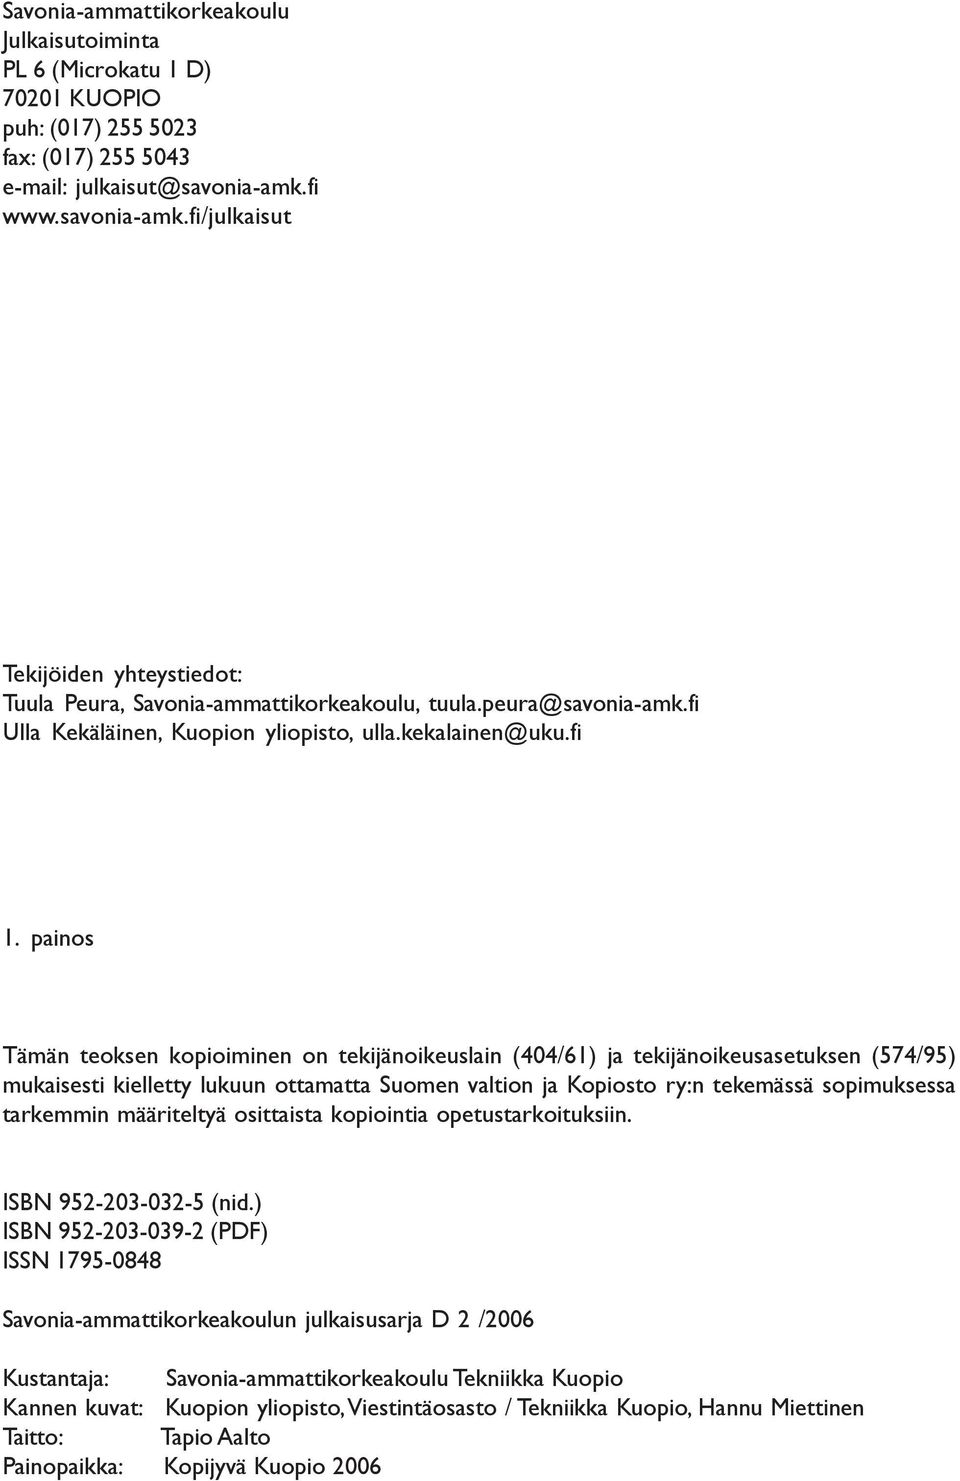 painos Tämän teoksen kopioiminen on tekijänoikeuslain (404/61) ja tekijänoikeusasetuksen (574/95) mukaisesti kielletty lukuun ottamatta Suomen valtion ja Kopiosto ry:n tekemässä sopimuksessa